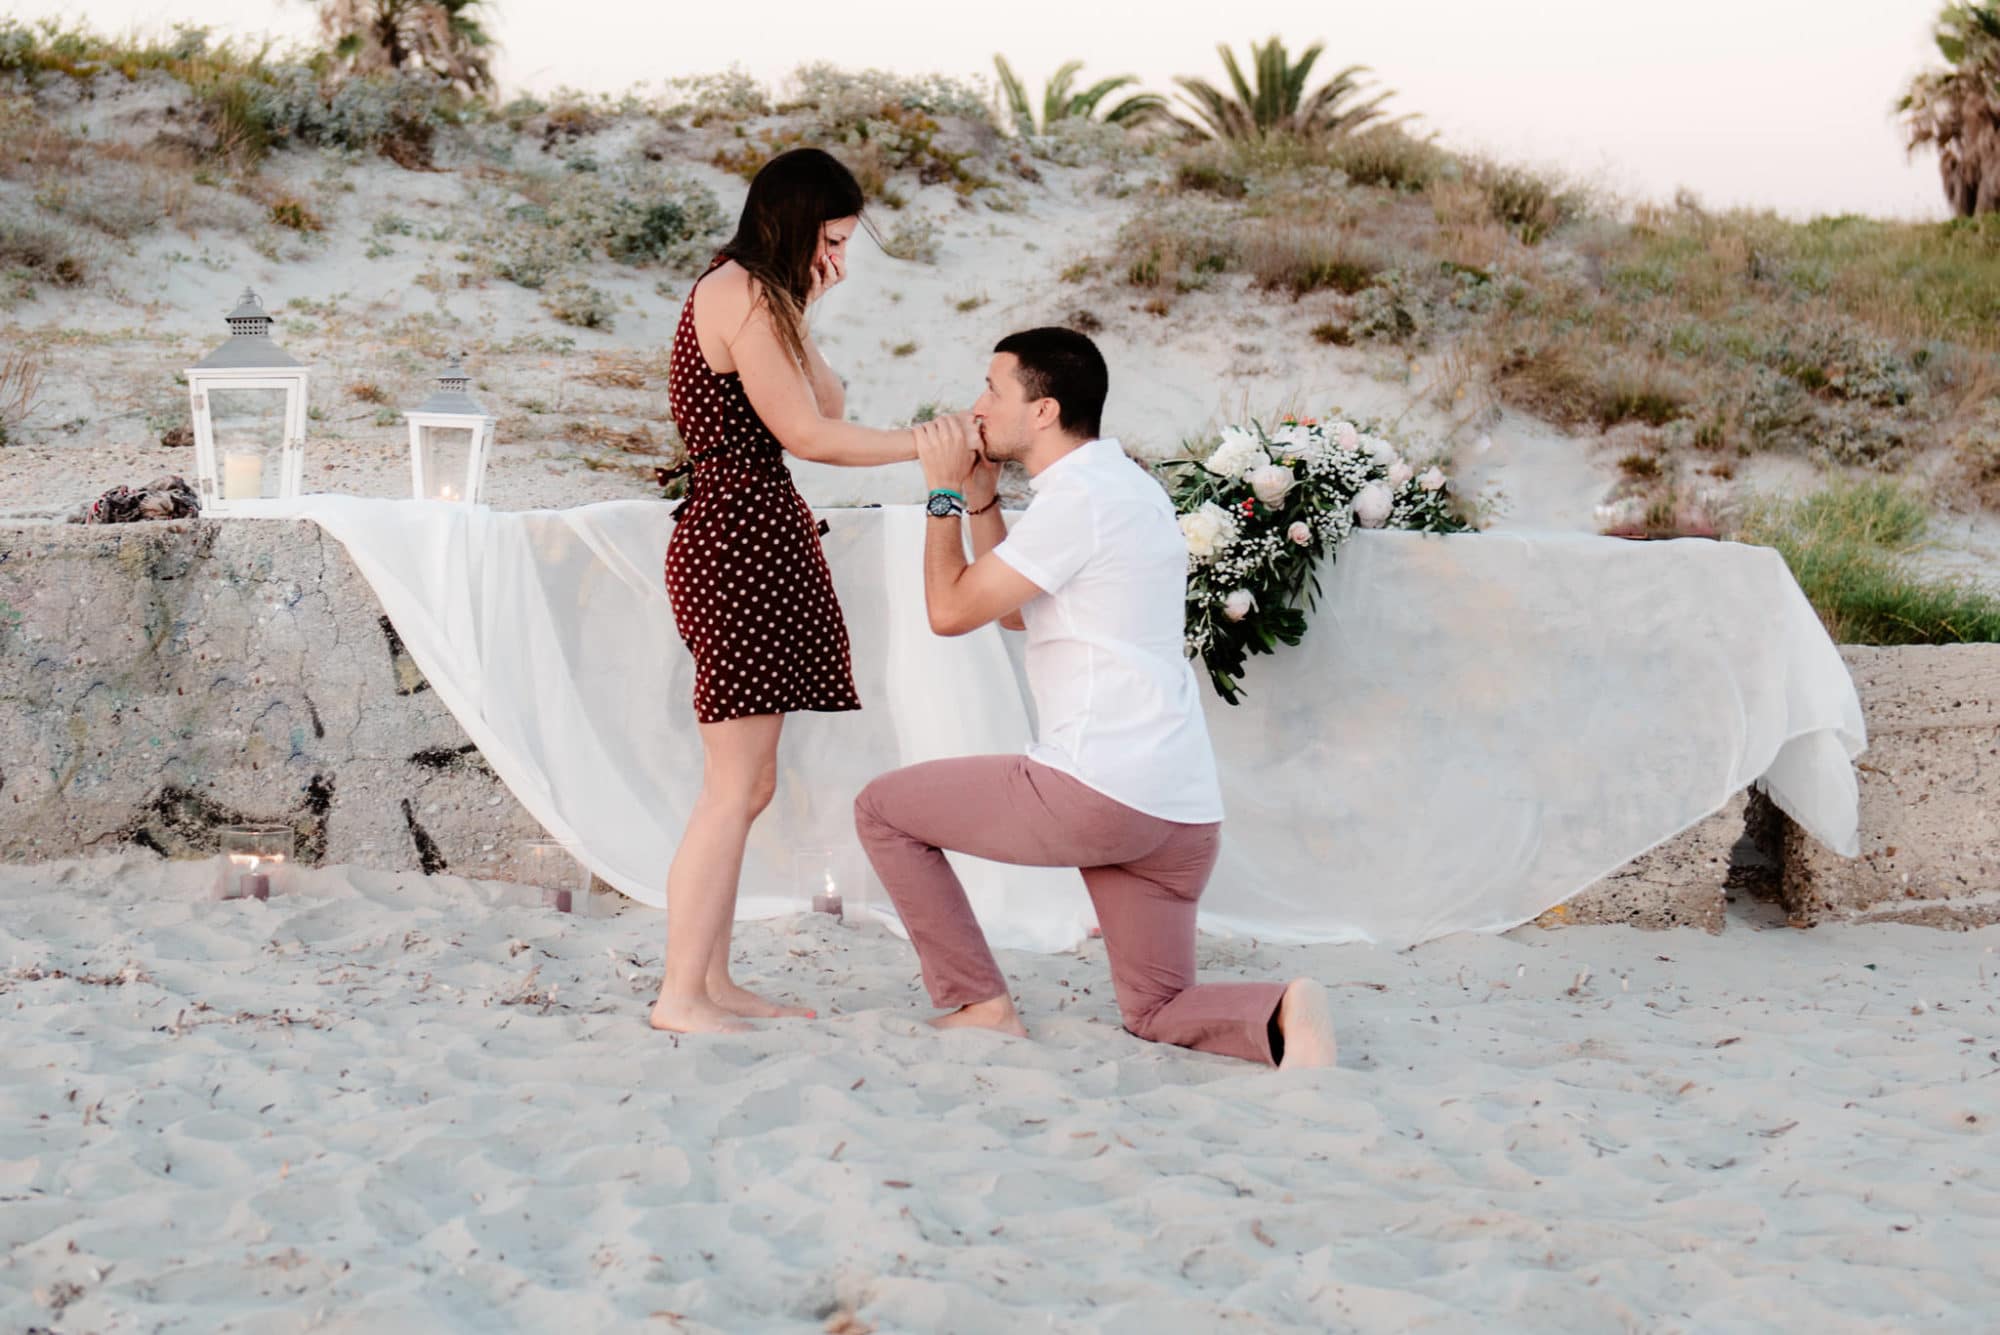 Why Choose Alghero, Sardinia For a Wedding Proposal?